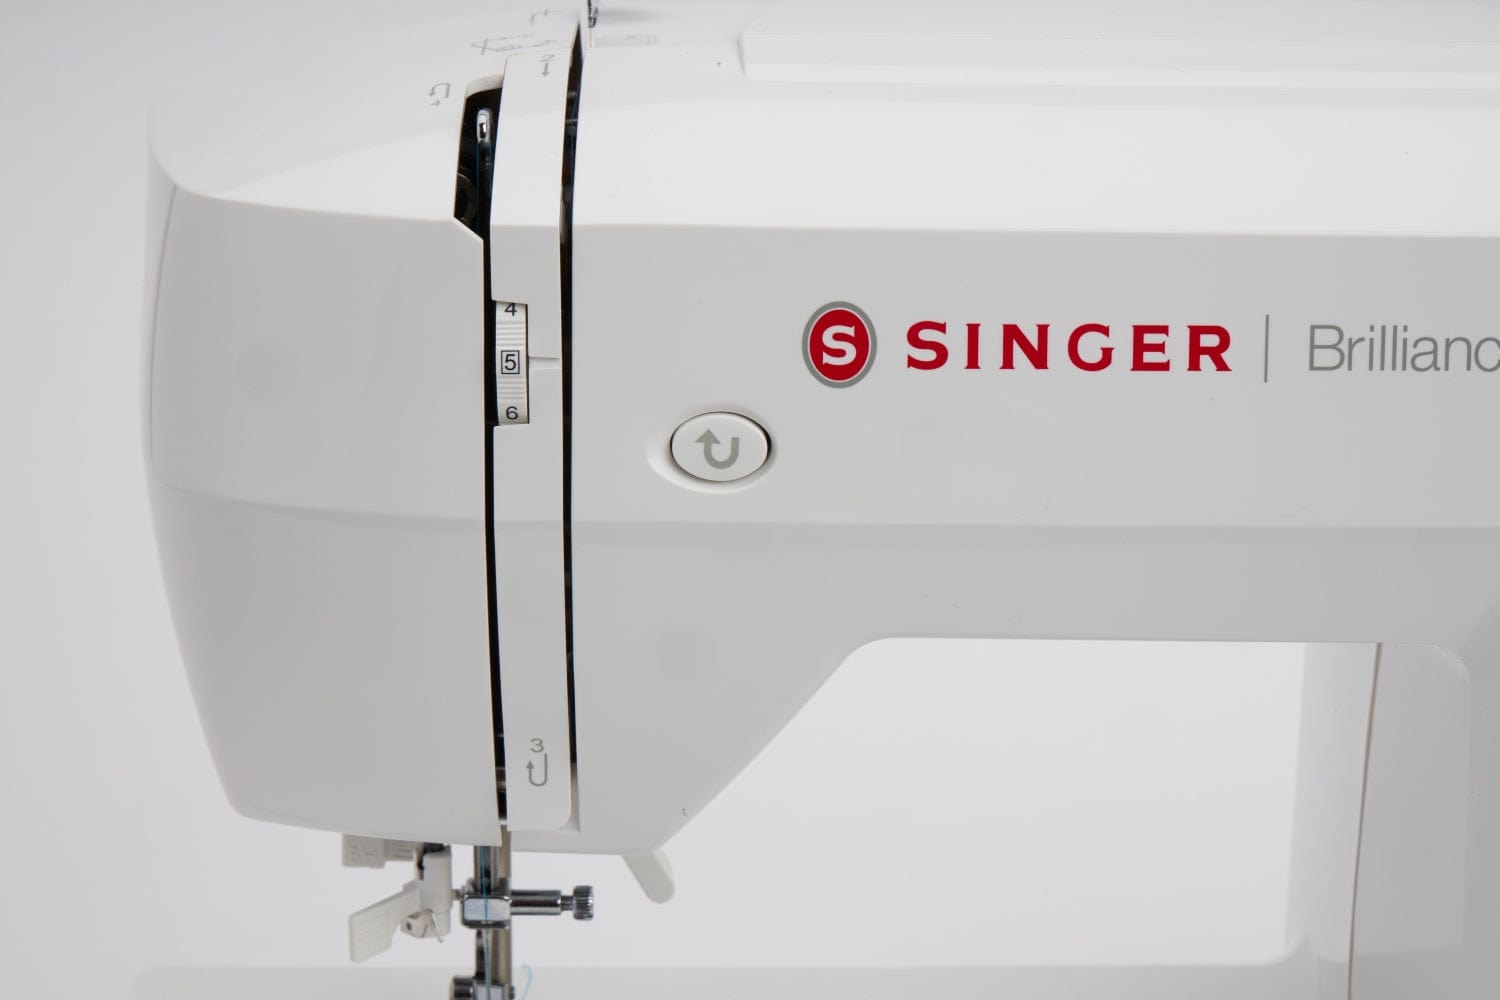 Singer ماكينة خياطة الكترونية - SGM-6180